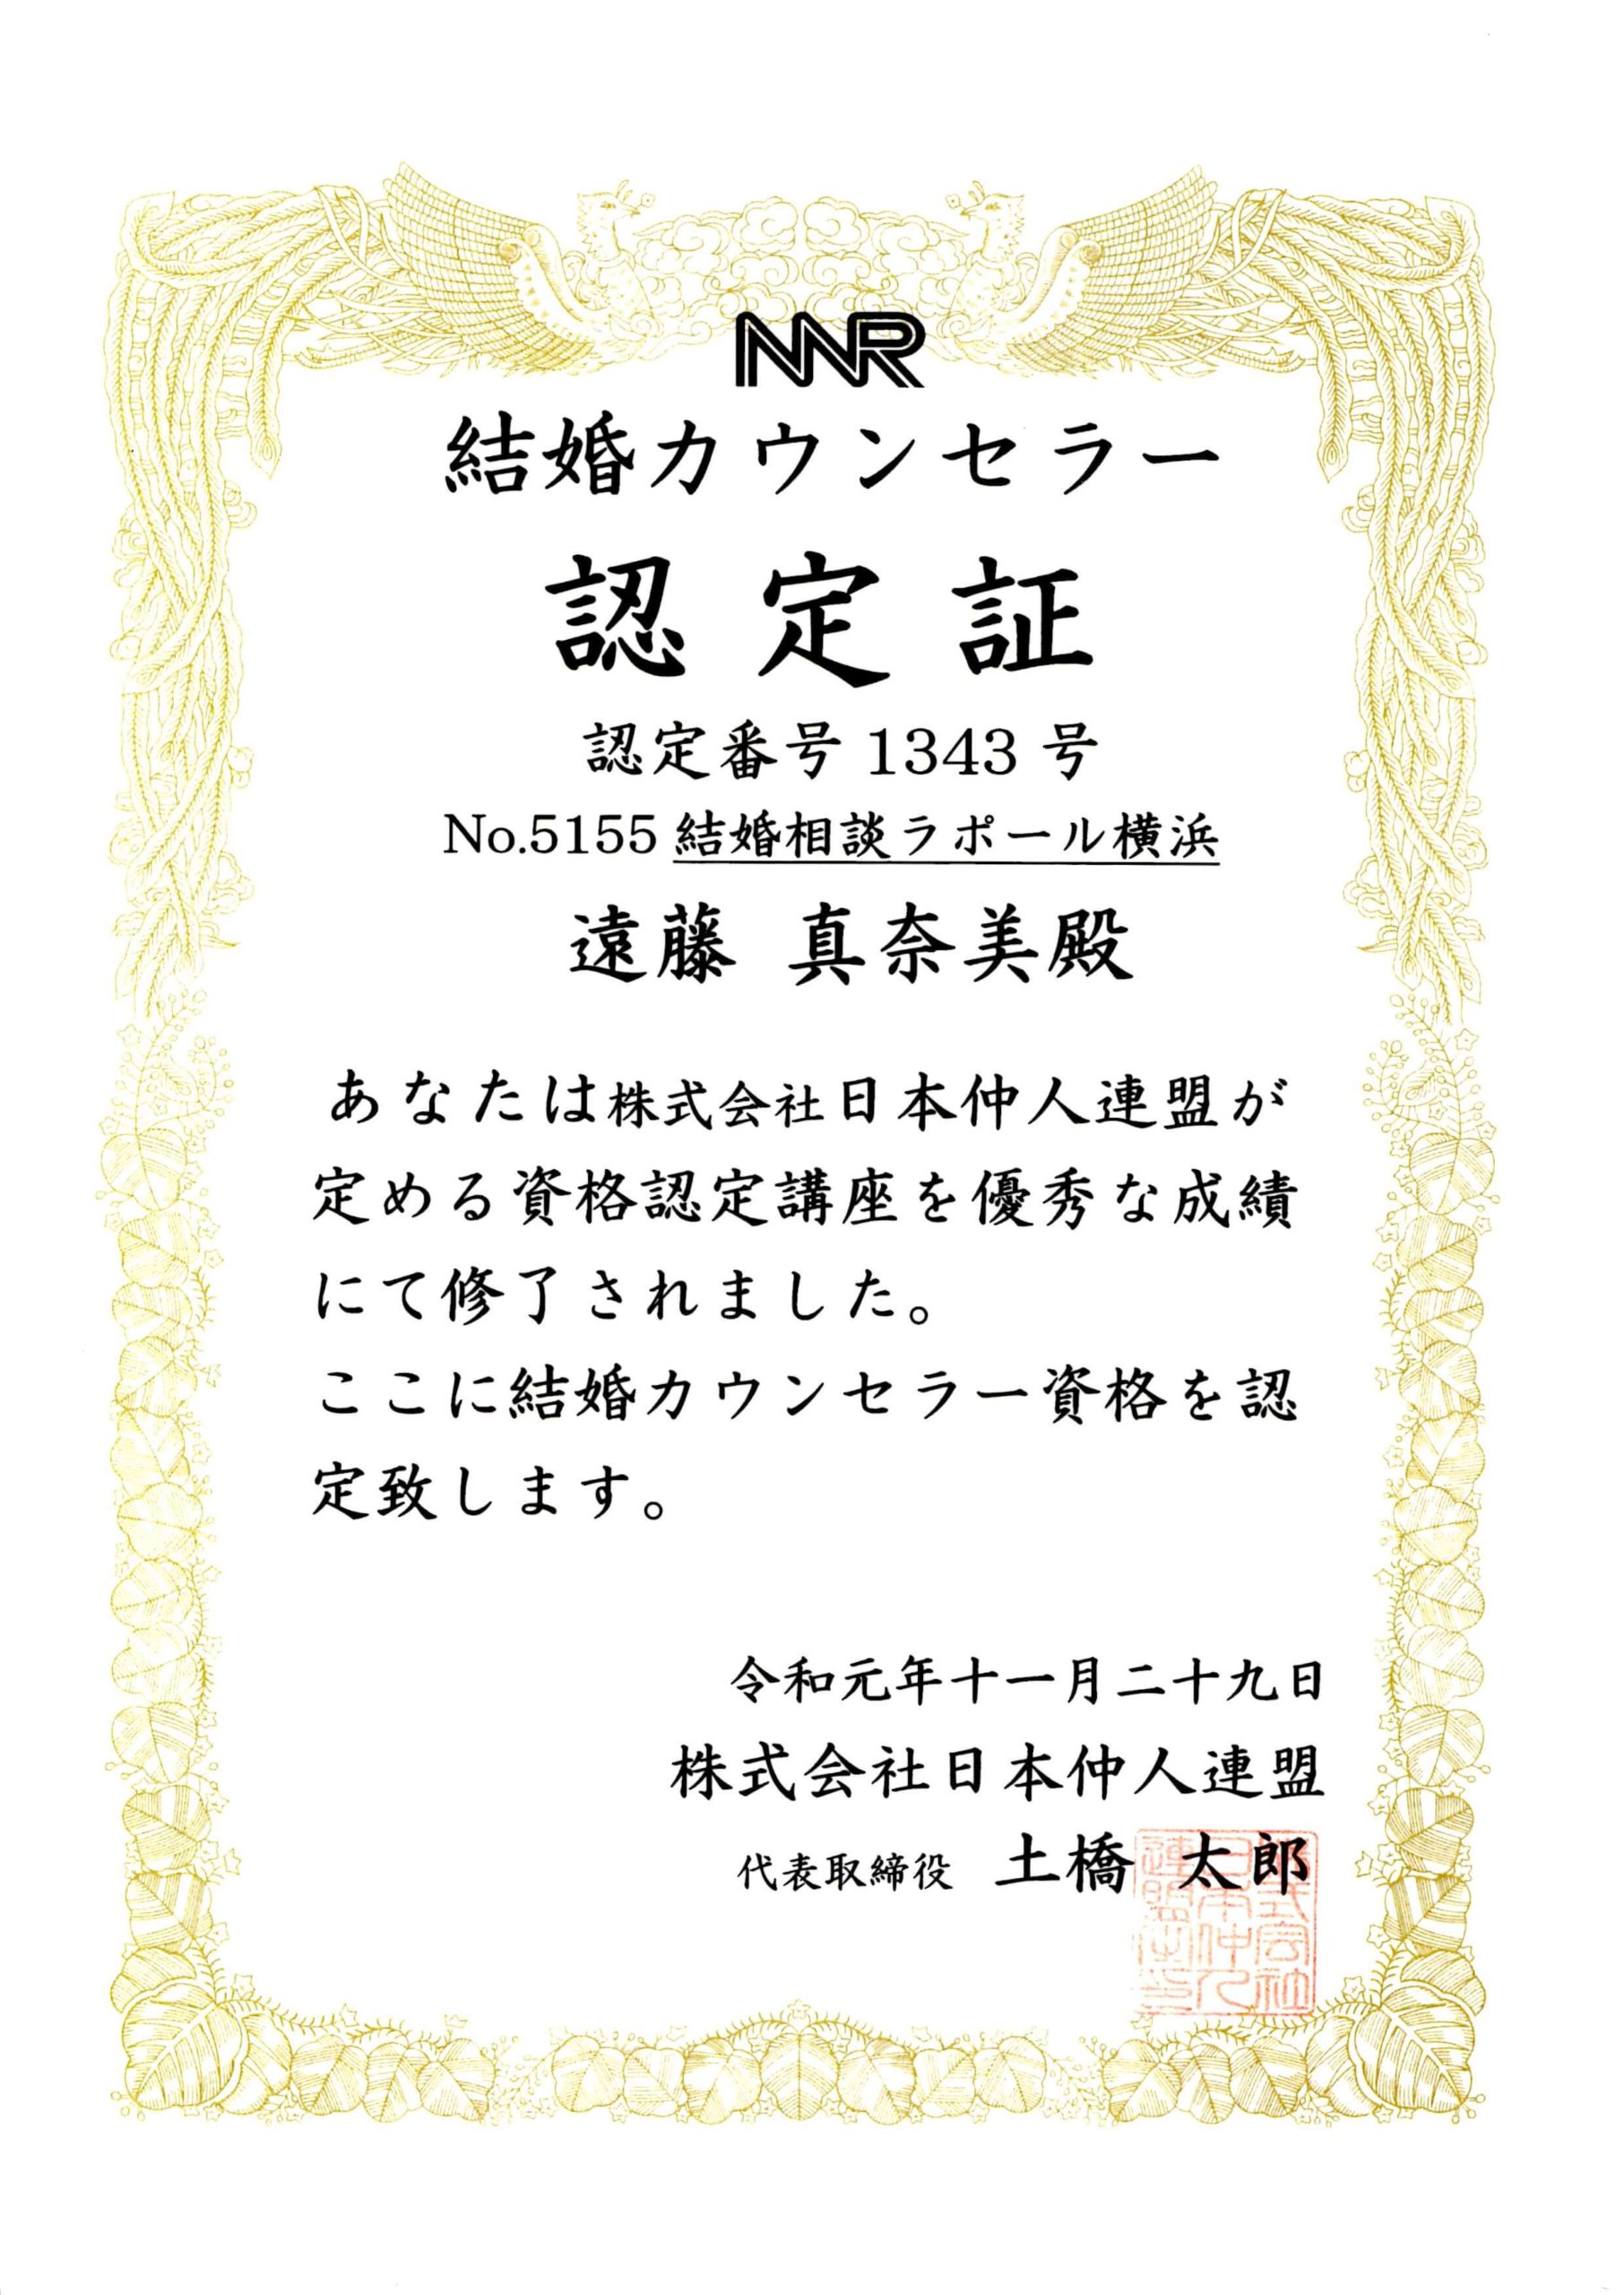 日本仲人連盟結婚カウンセラー資格認定書（遠藤まなみ）、令和元年11月29日